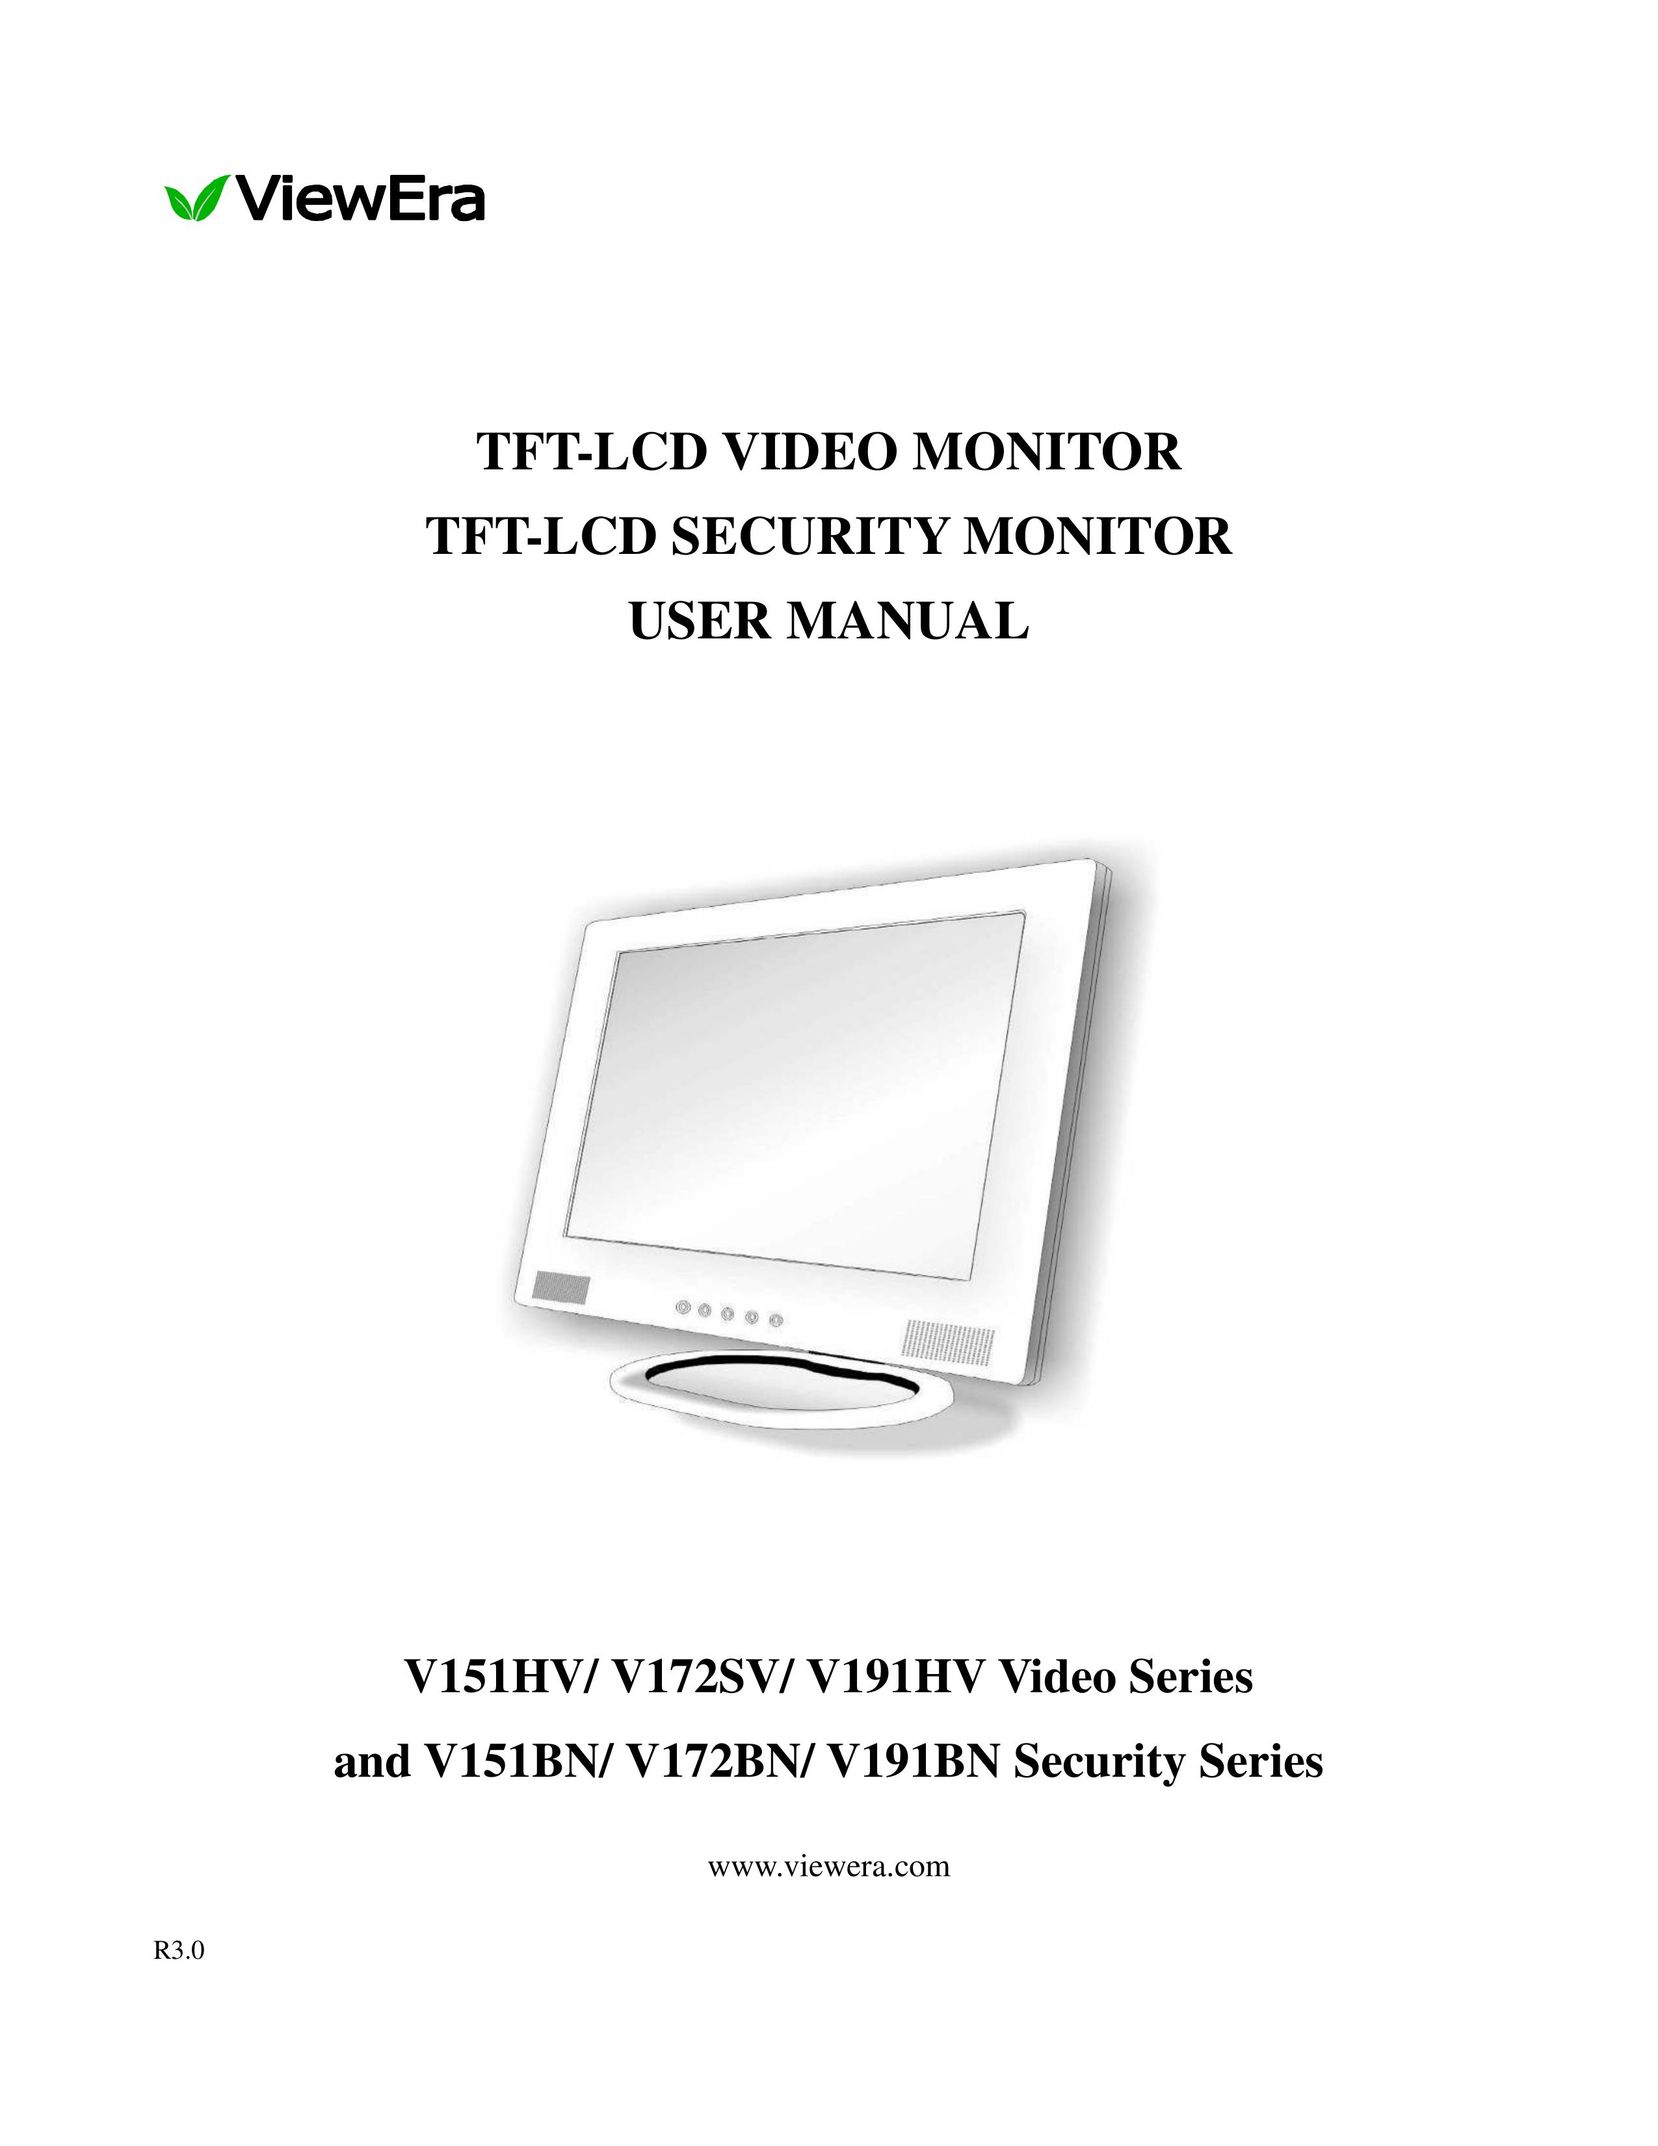 ViewEra V191HV Computer Monitor User Manual